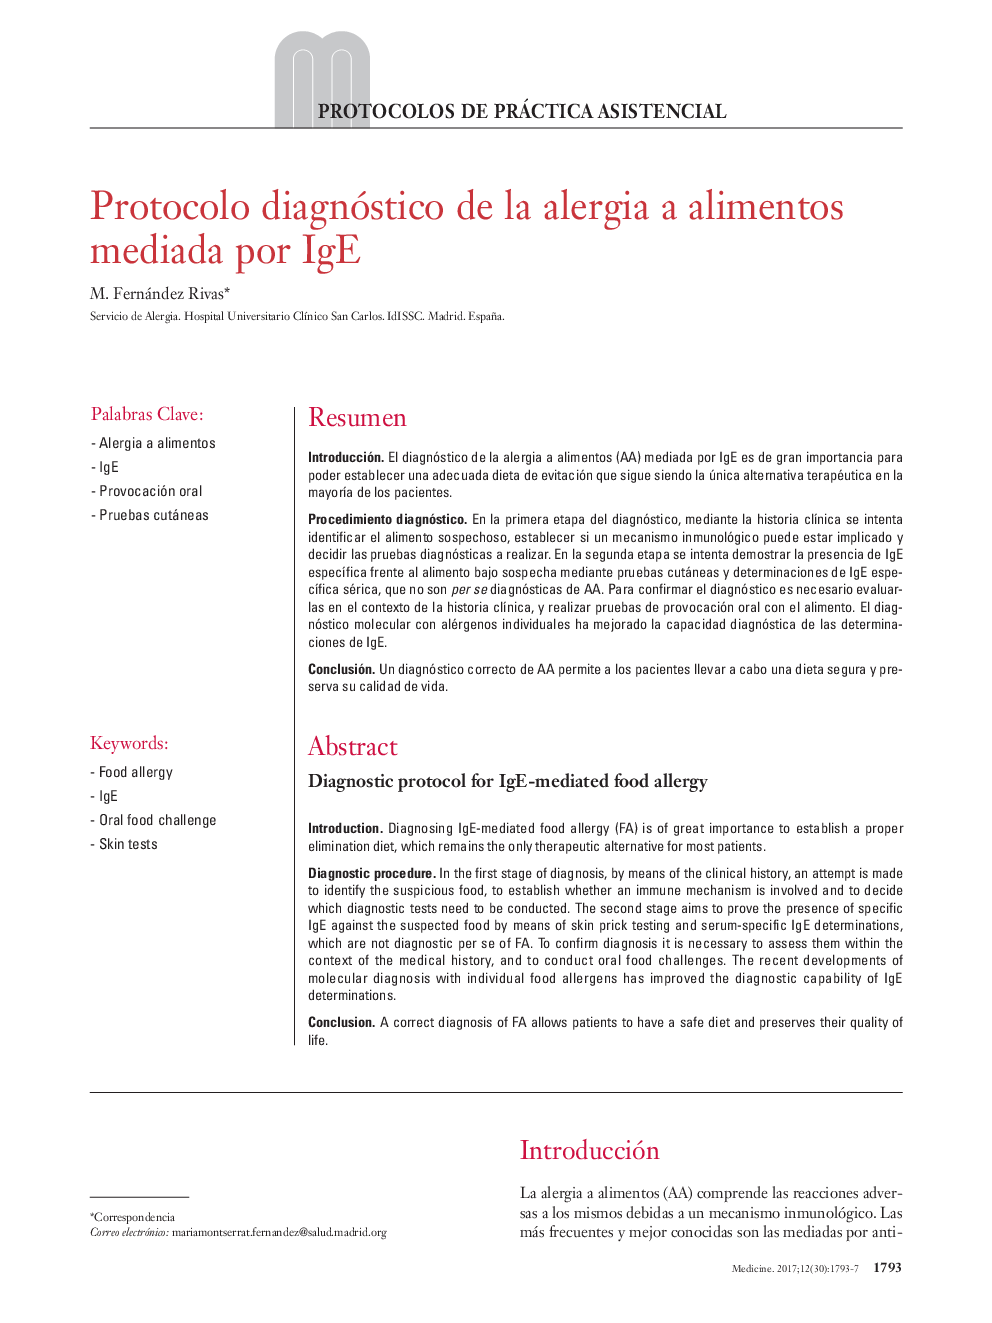 Protocolo diagnóstico de la alergia a alimentos mediada por IgE